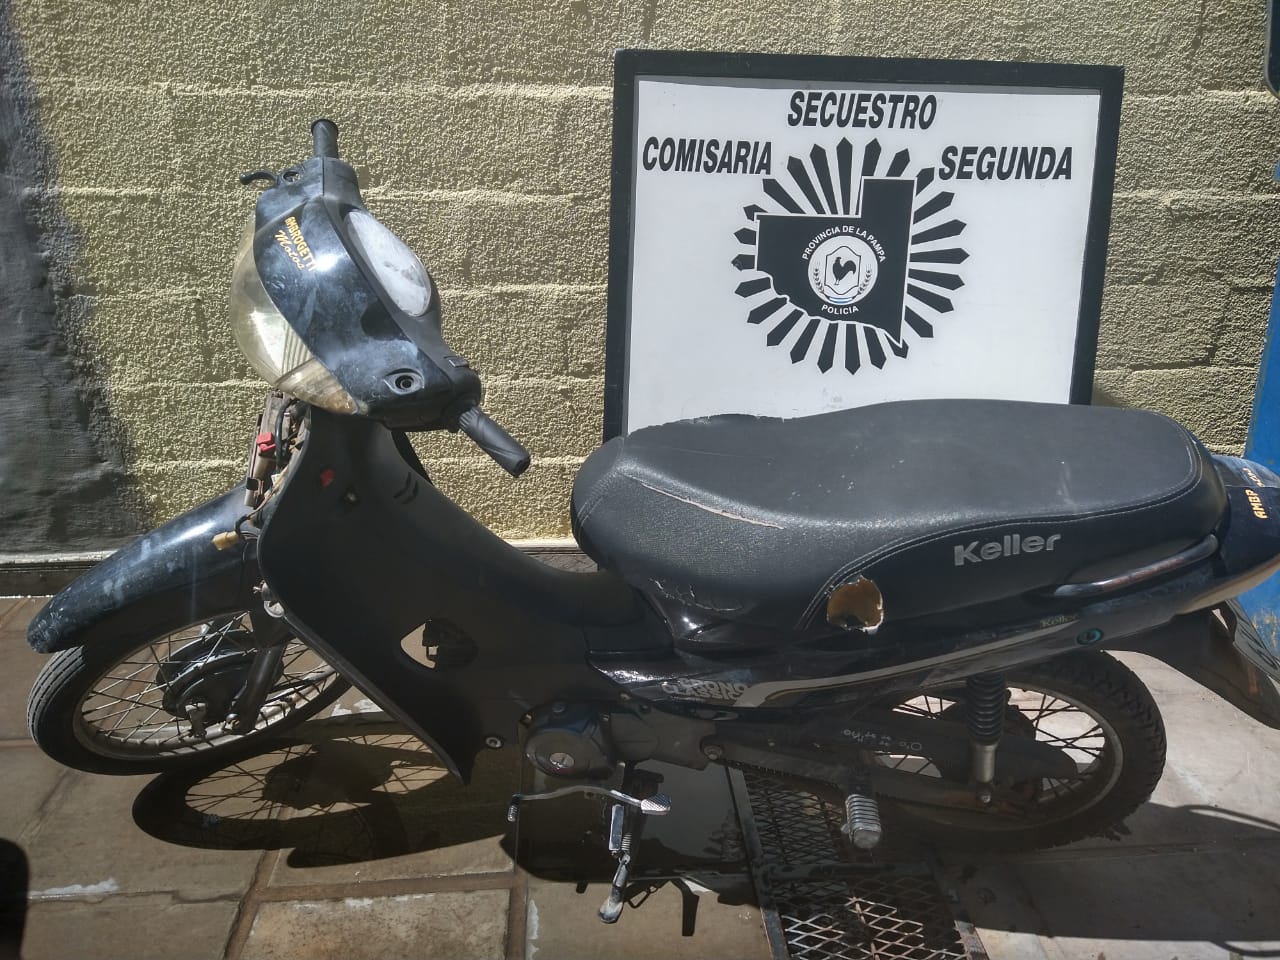 La Policía recuperó una moto en barrio Ranqueles: Delincuentes la habían robado en calle 17 y 108